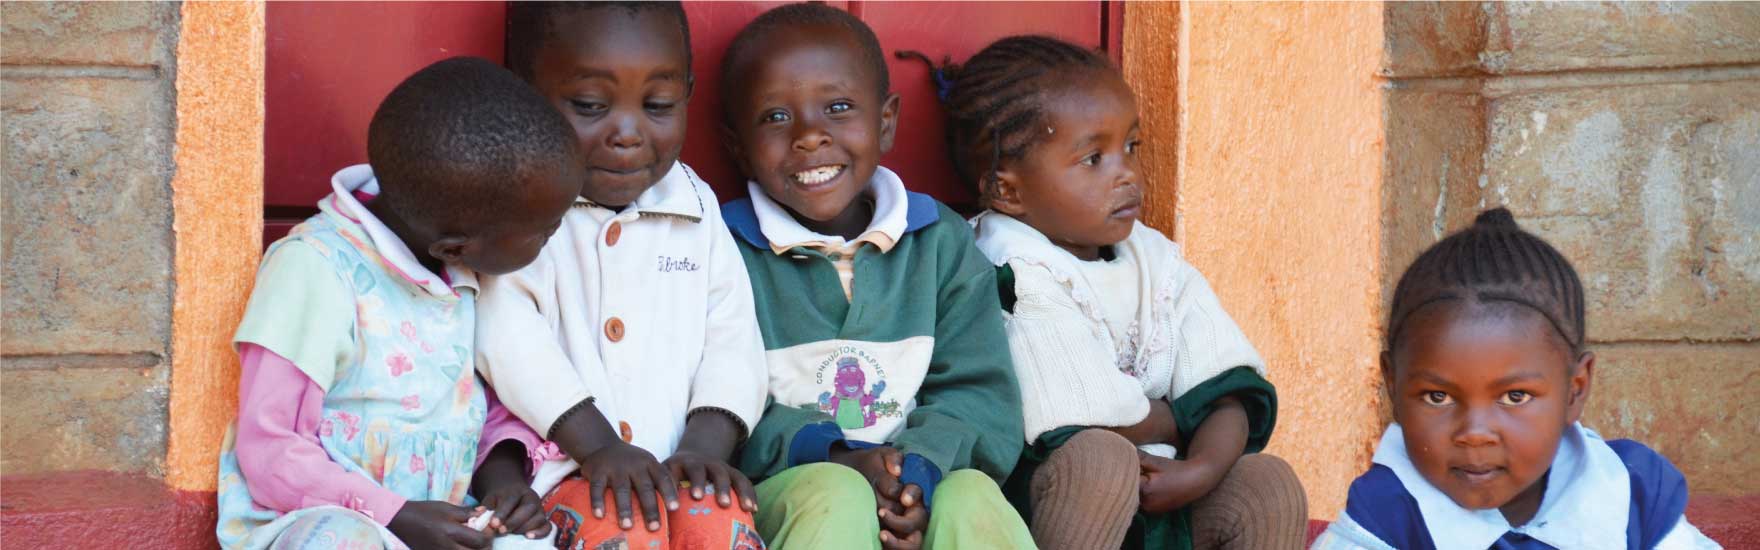 Patenschaften Kinder Kenya